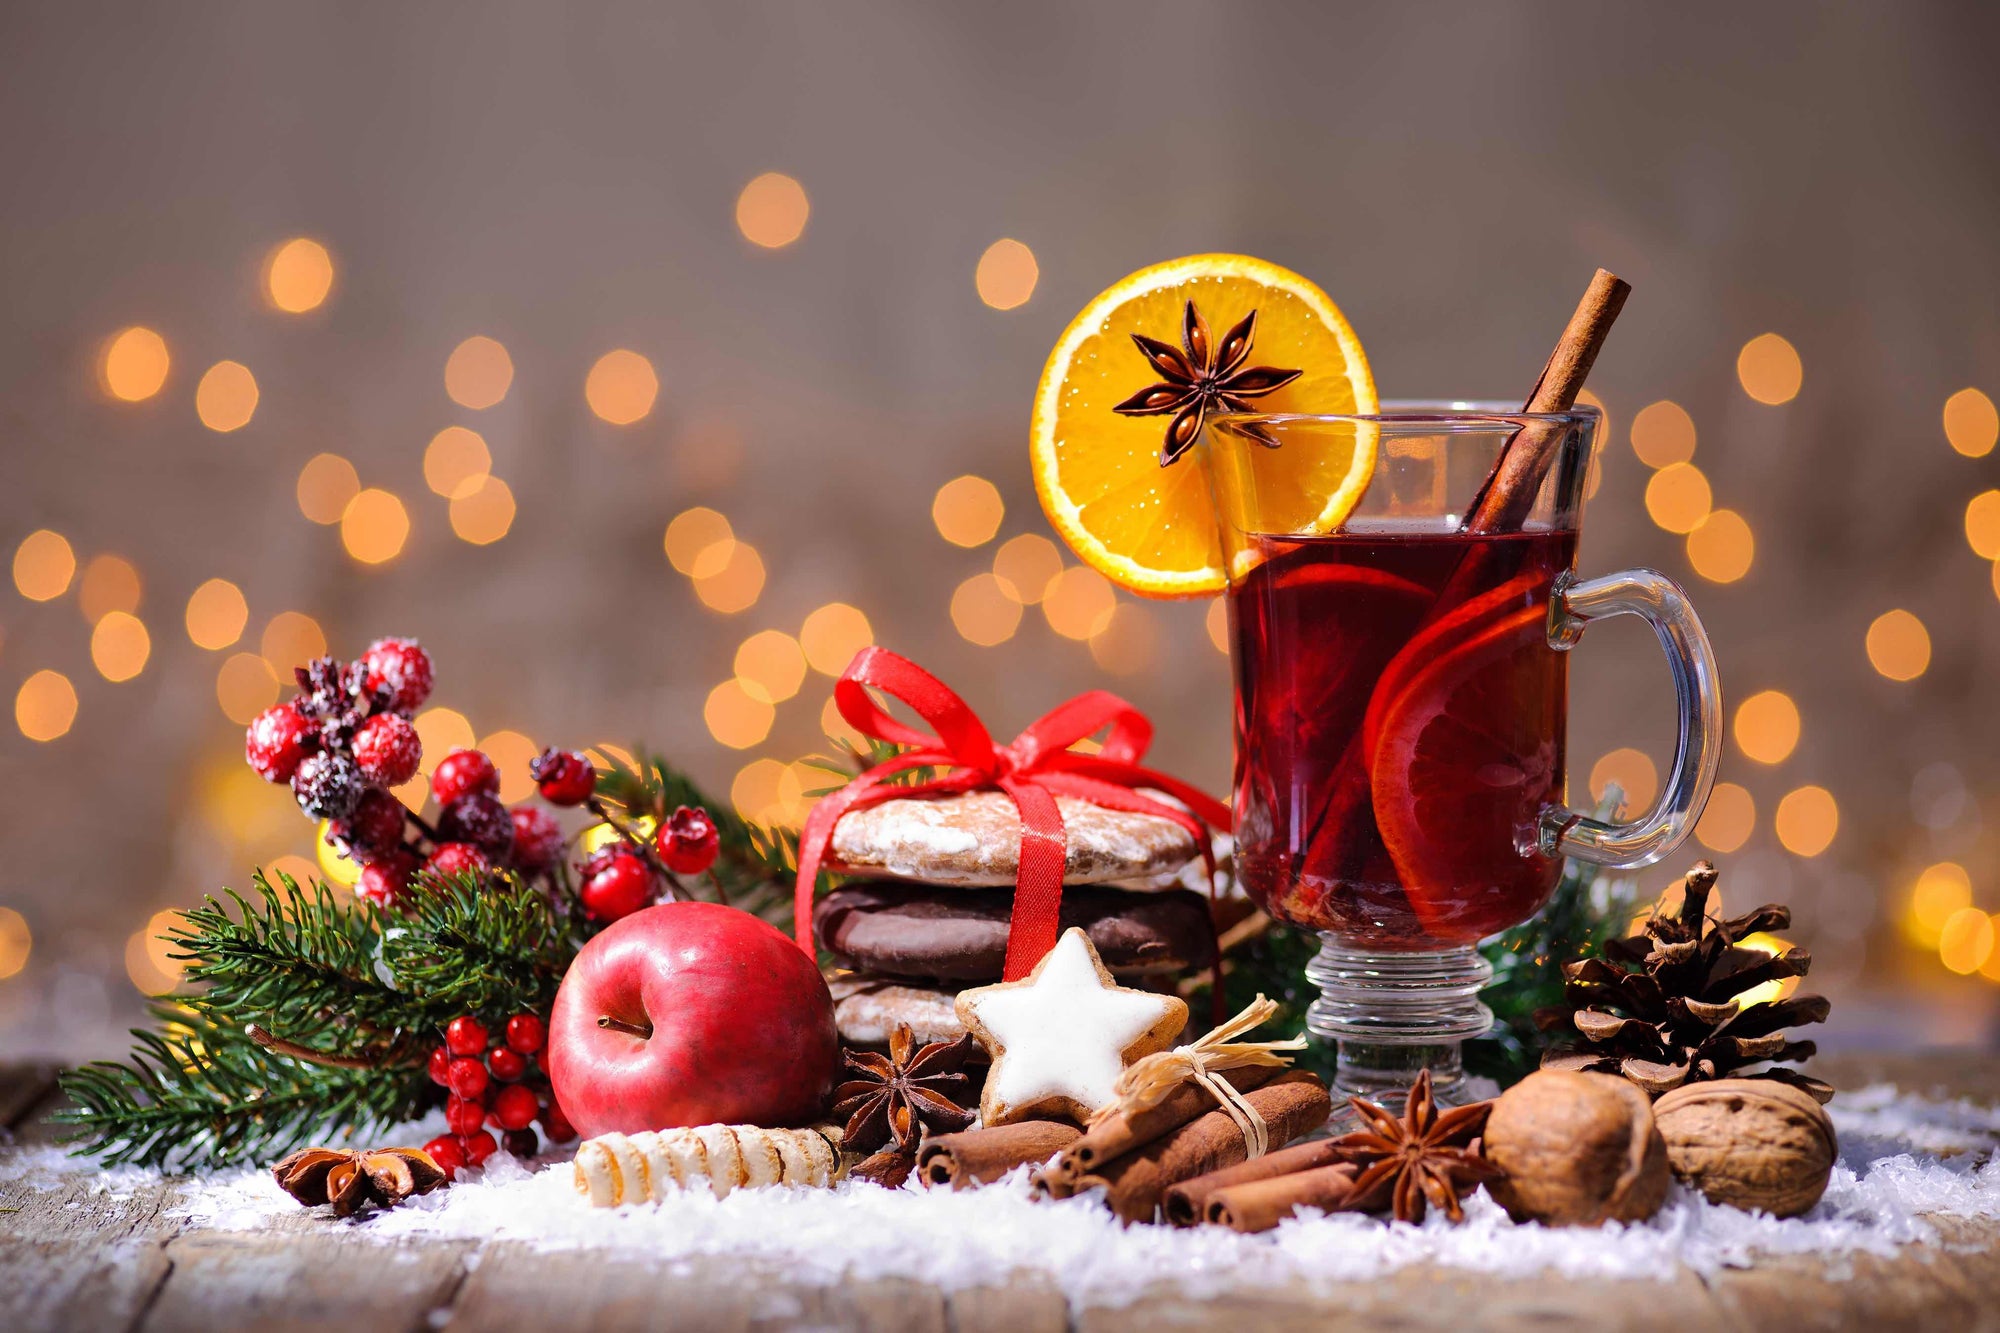 Weihnachtsgeschenke mit Schokolade & Tee